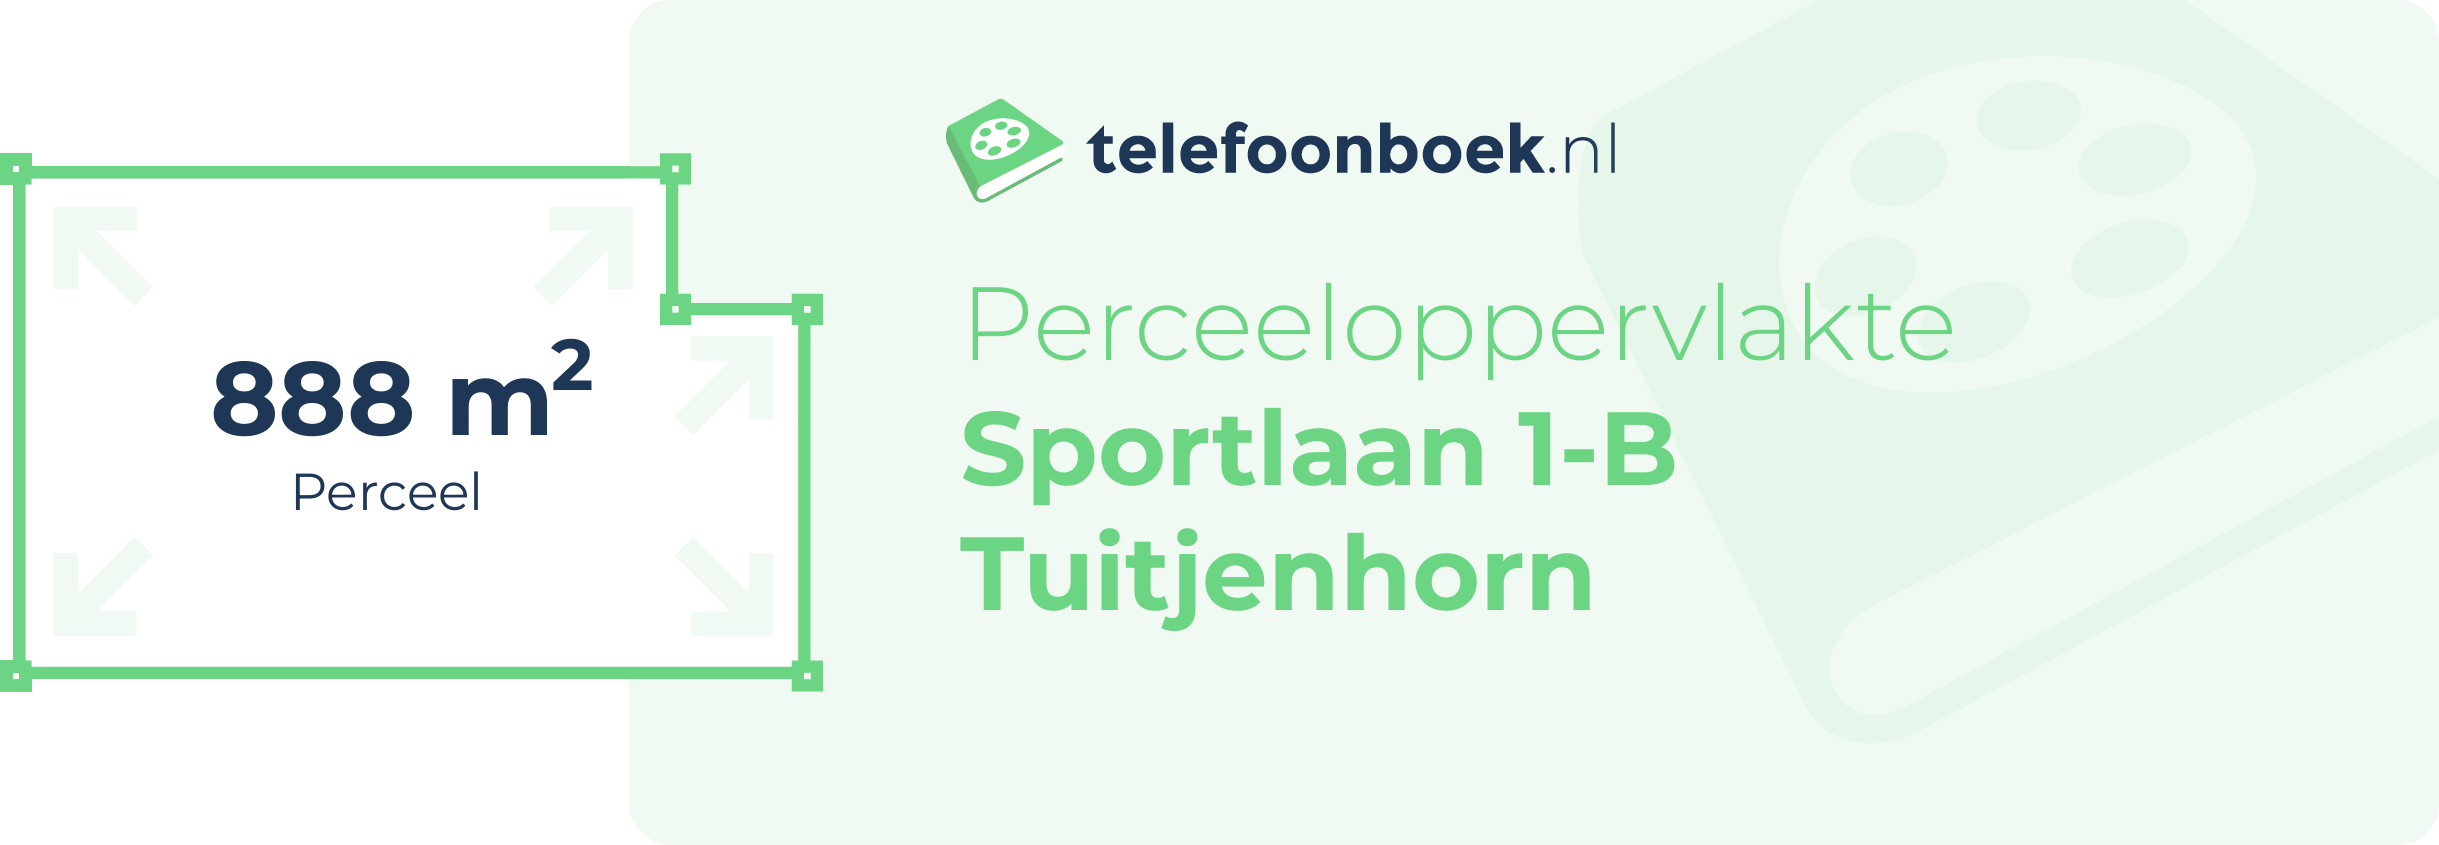 Perceeloppervlakte Sportlaan 1-B Tuitjenhorn